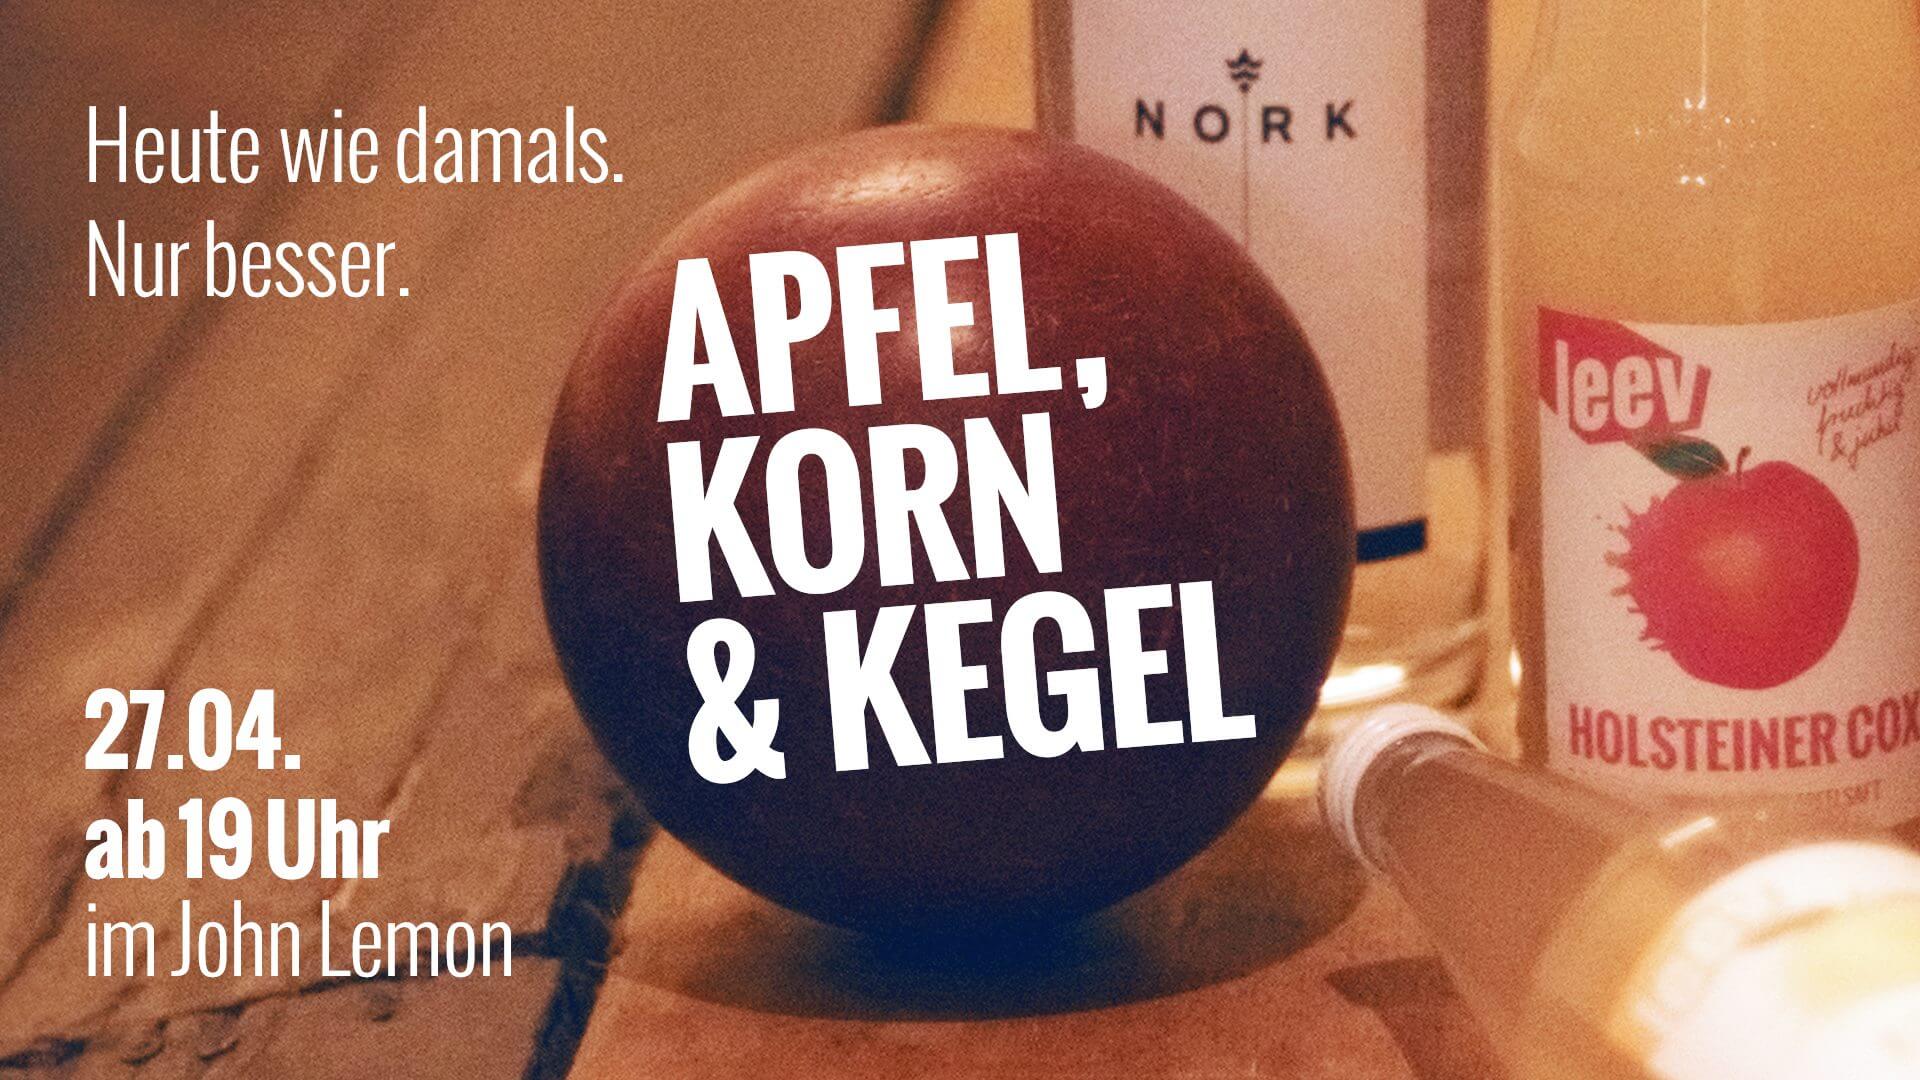 Ein Abend mit Apfel, Korn, Kegel und Musik – es wird gekegelt in der John Lemon Bar mit Apfelsaft von leev!